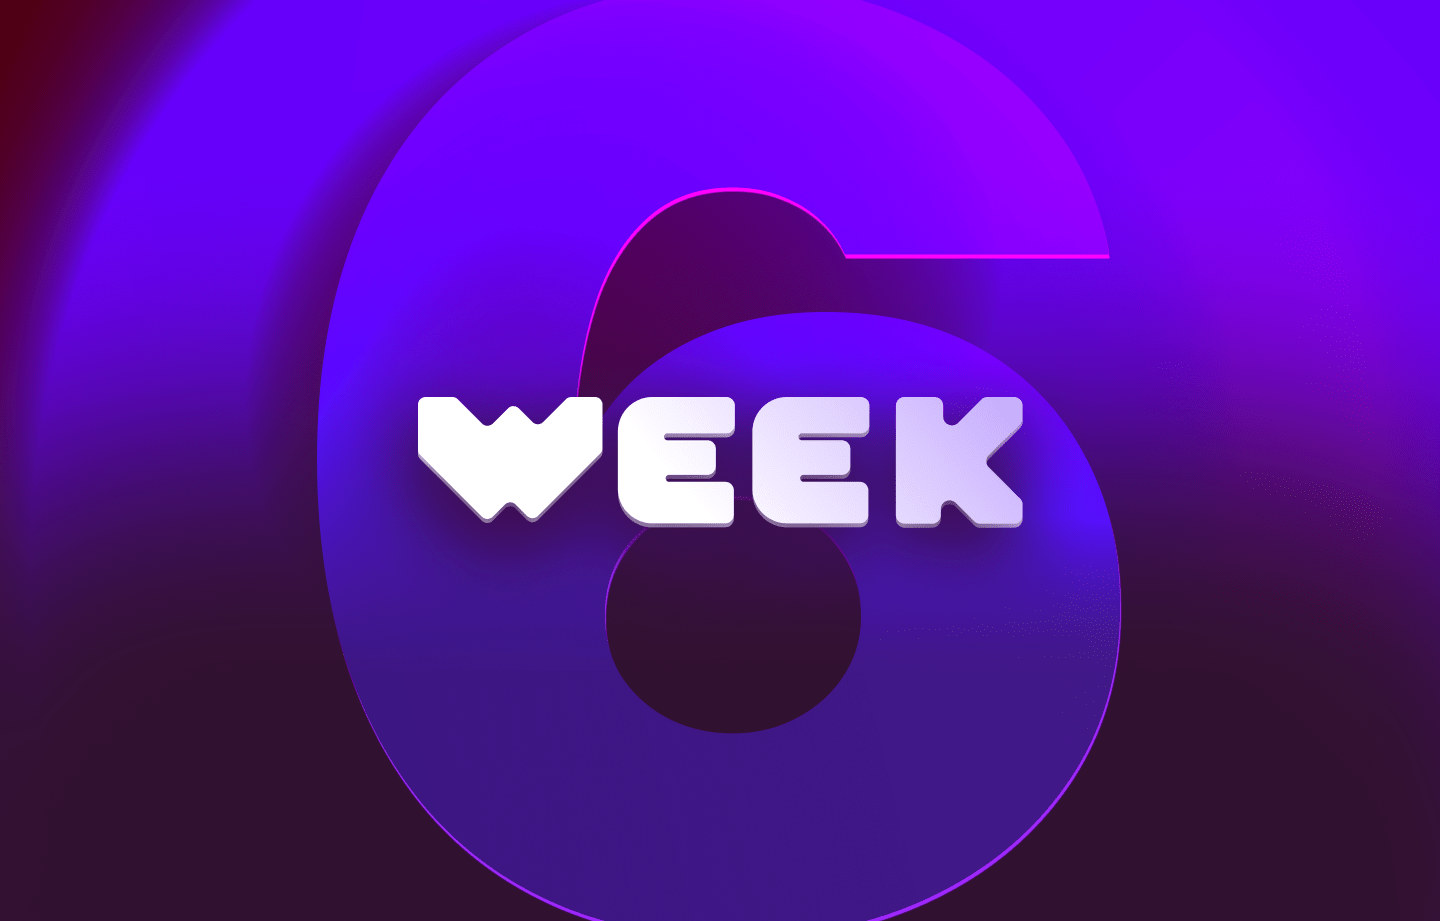 This week in web3 #6